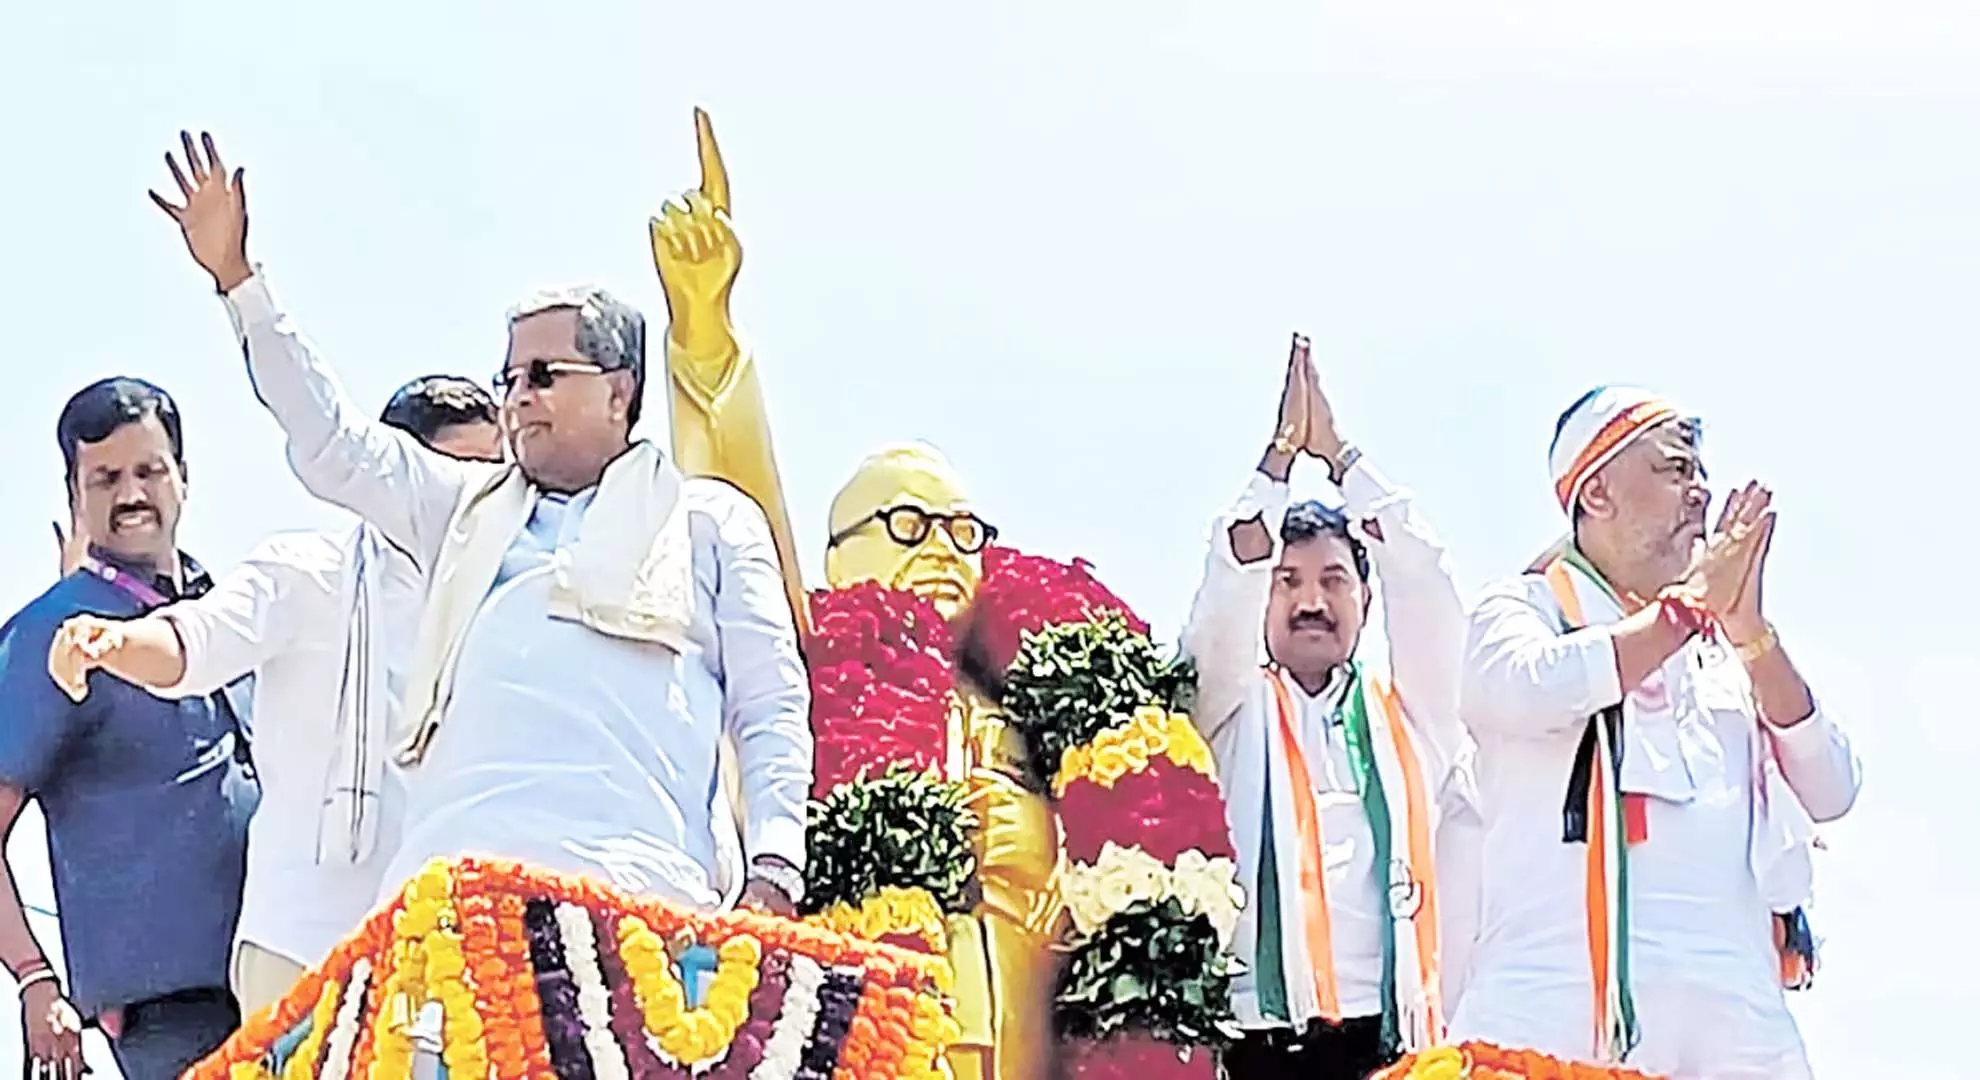 भाजपा सरकार को हार दिख रही है; कर्नाटक में कांग्रेस अधिकांश सीटें जीतेगी: सिद्धारमैया, डीकेएस